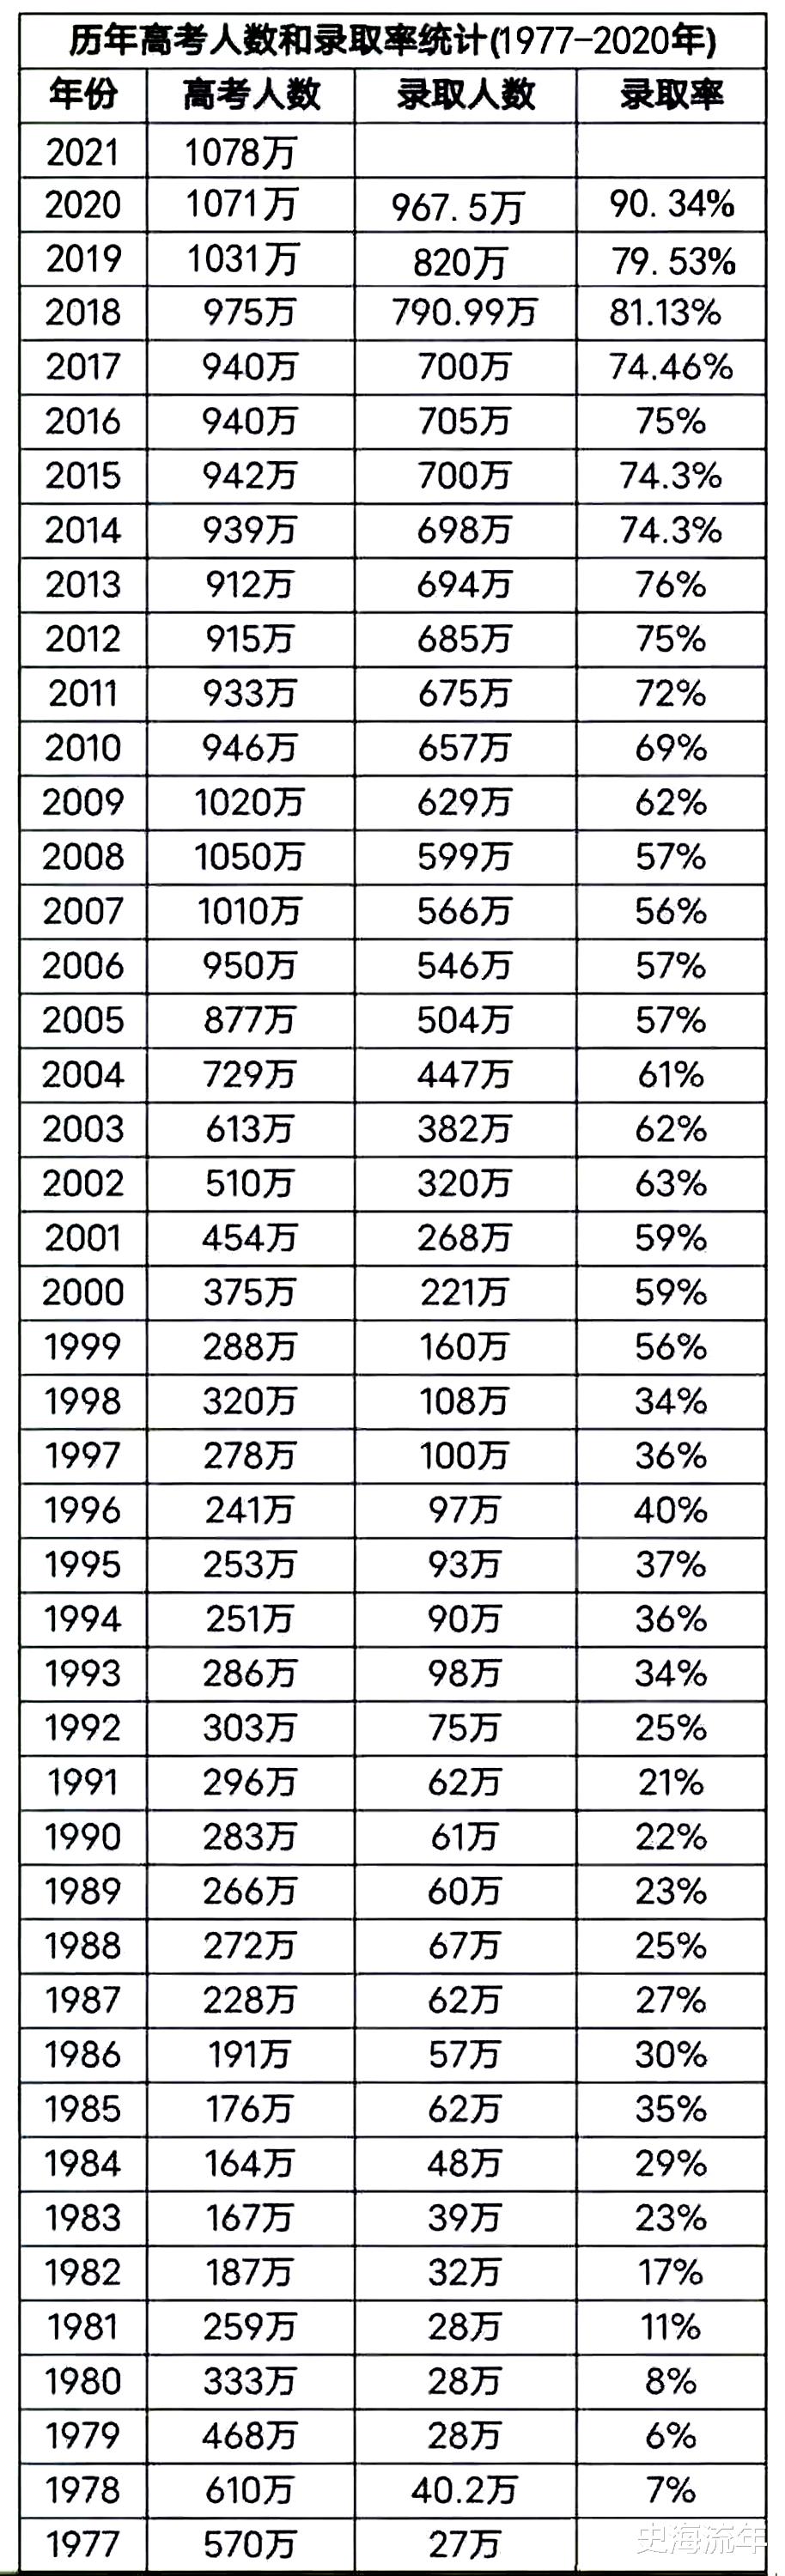 大数据! 1977-2021年全国高考报名人数、录取率、毕业生人数